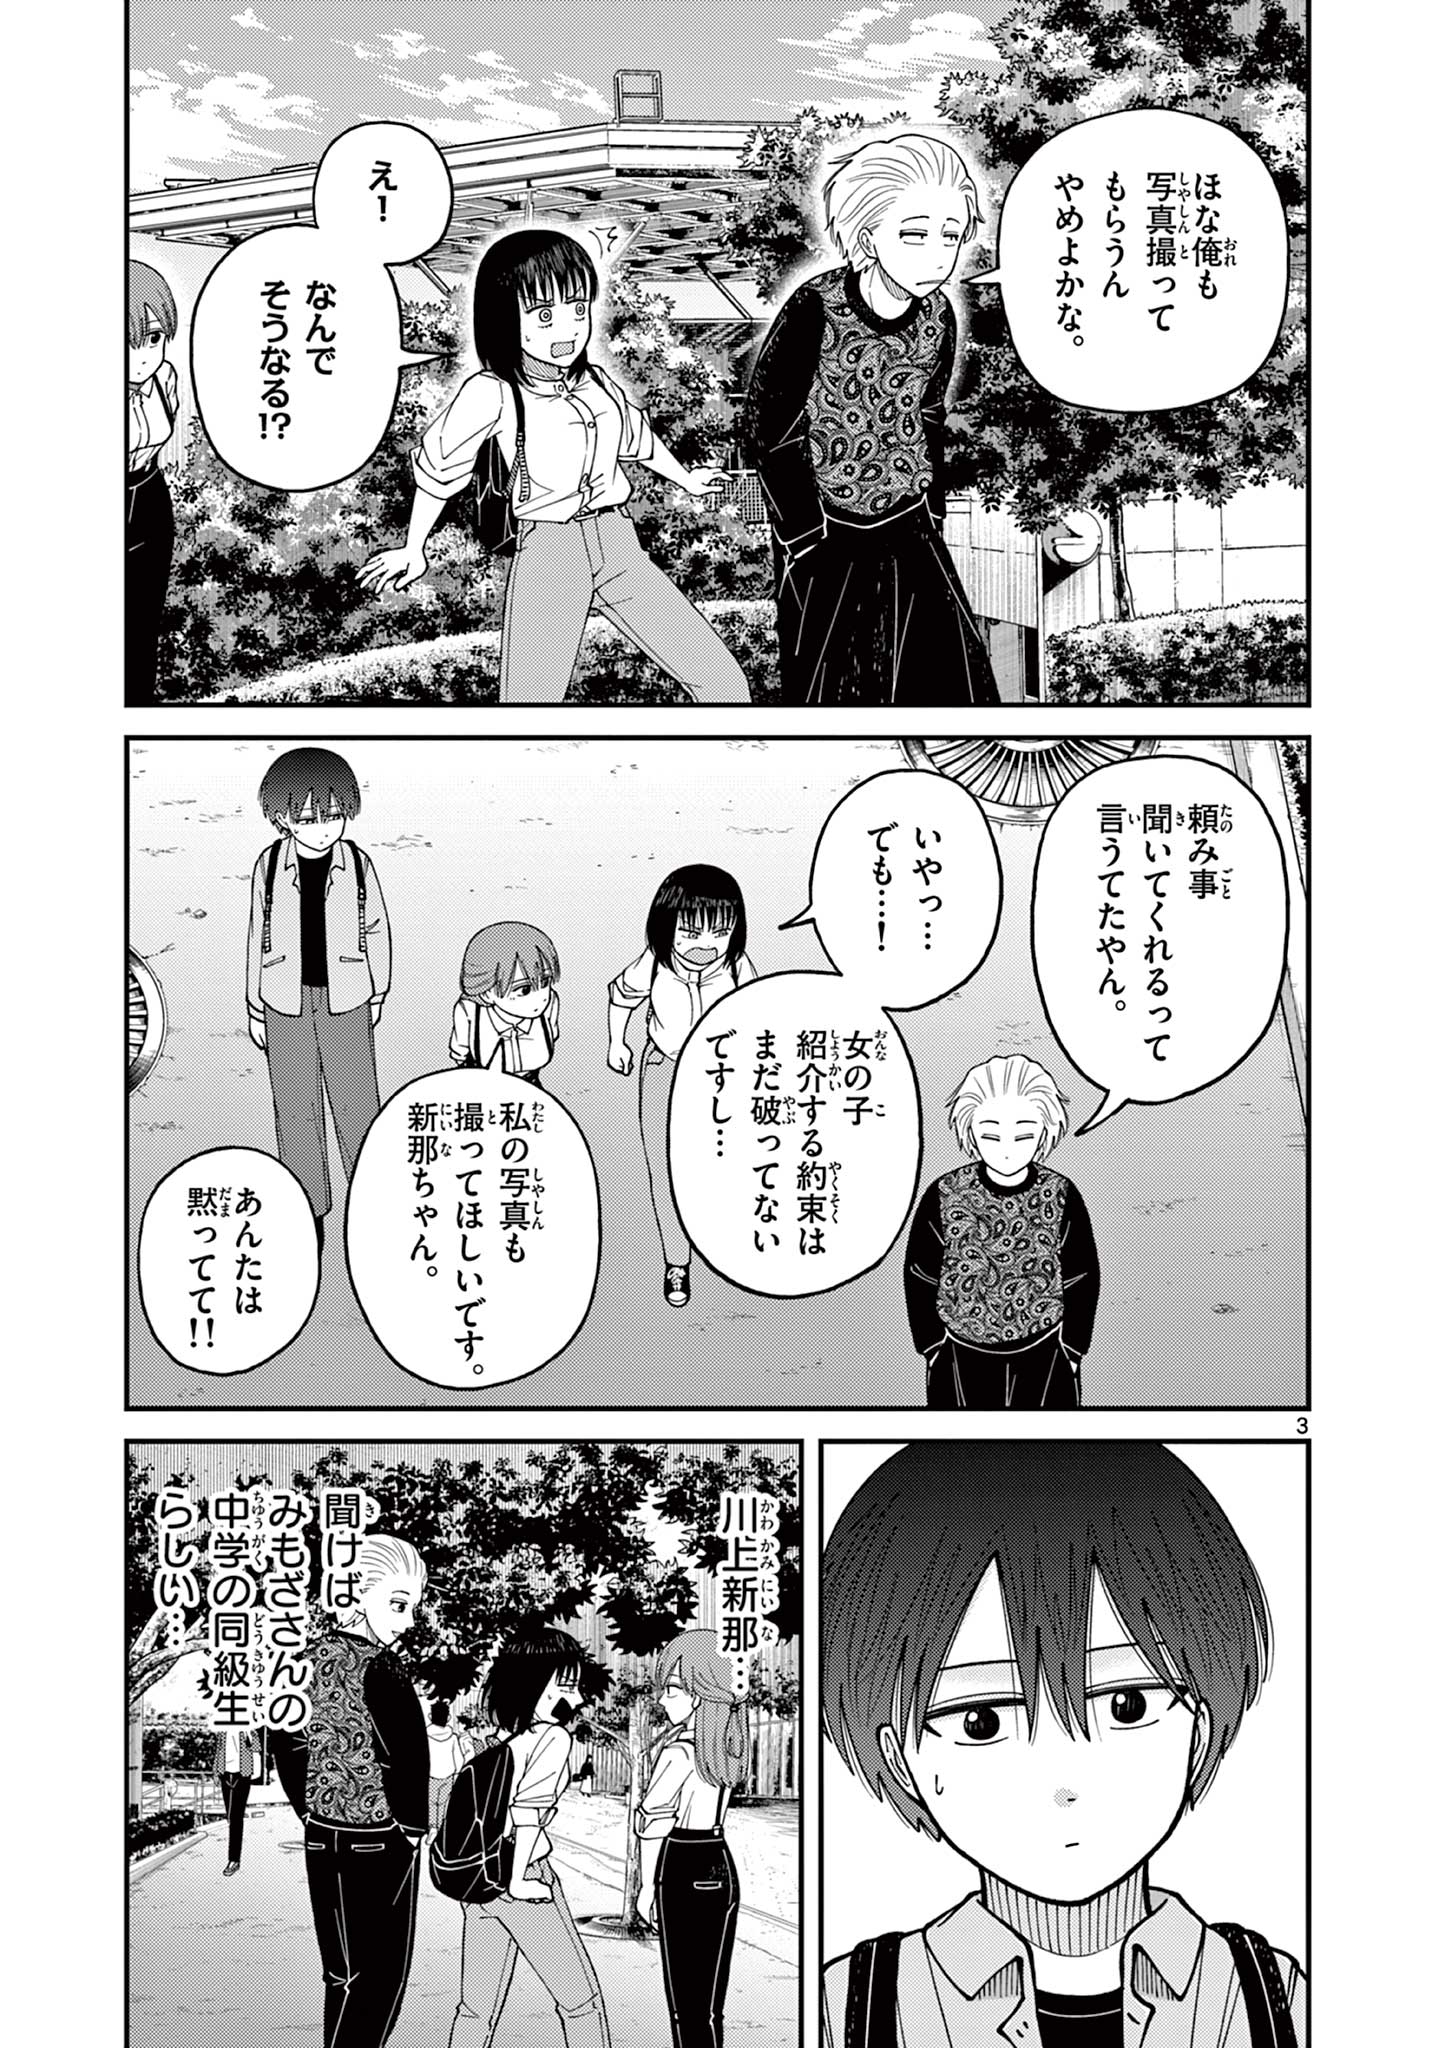 Mimozaizumu - Chapter 14 - Page 3